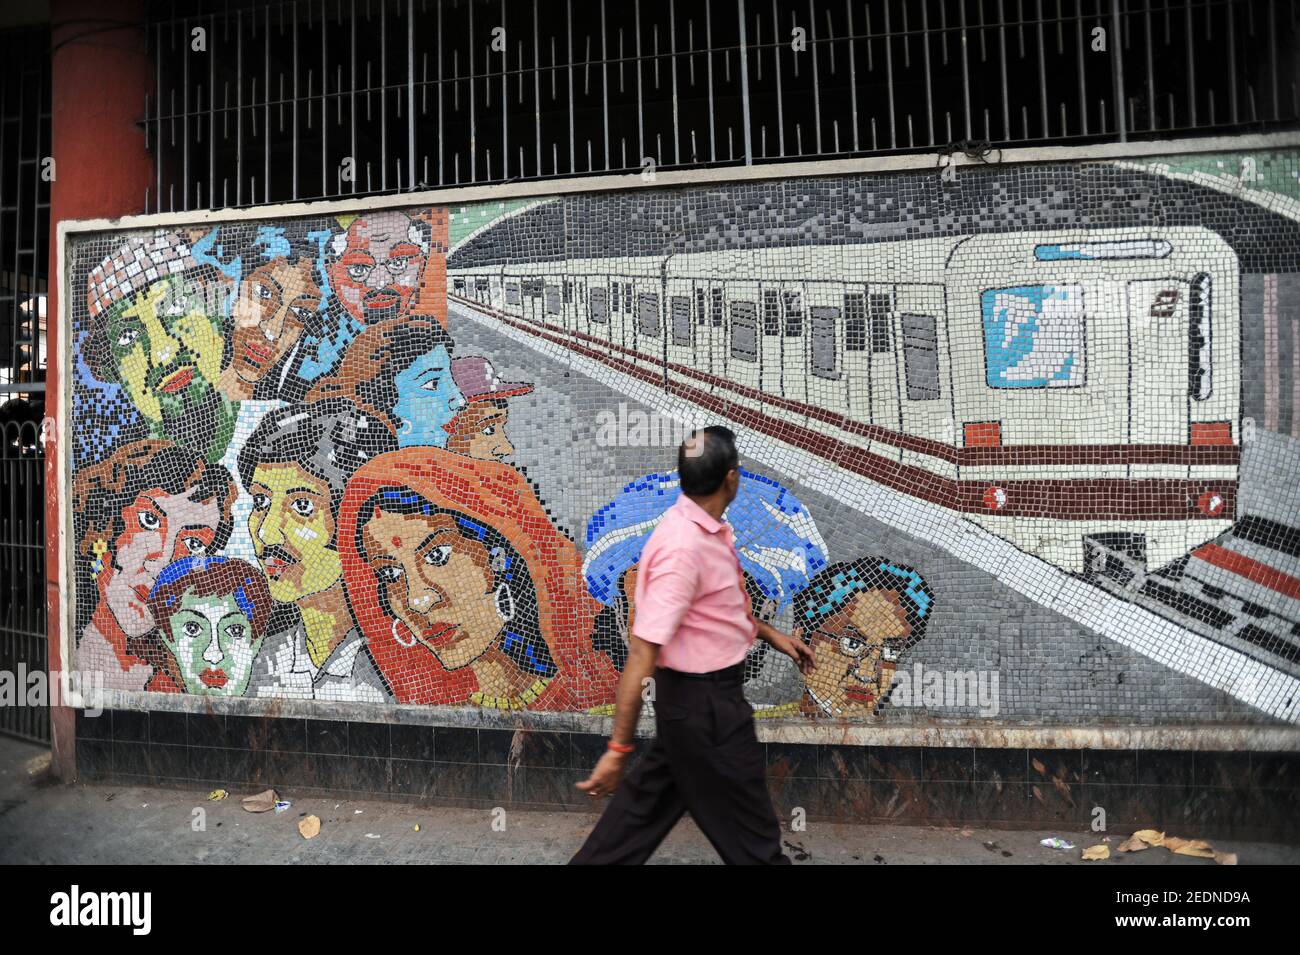 21.02.2011, Kalkutta, Bengale-Occidental, Inde - UN homme passe devant une mosaïque colorée à l'extérieur d'une station de métro. 0SL110221D008CAROEX.JPG [RÉF. DU MODÈLE Banque D'Images